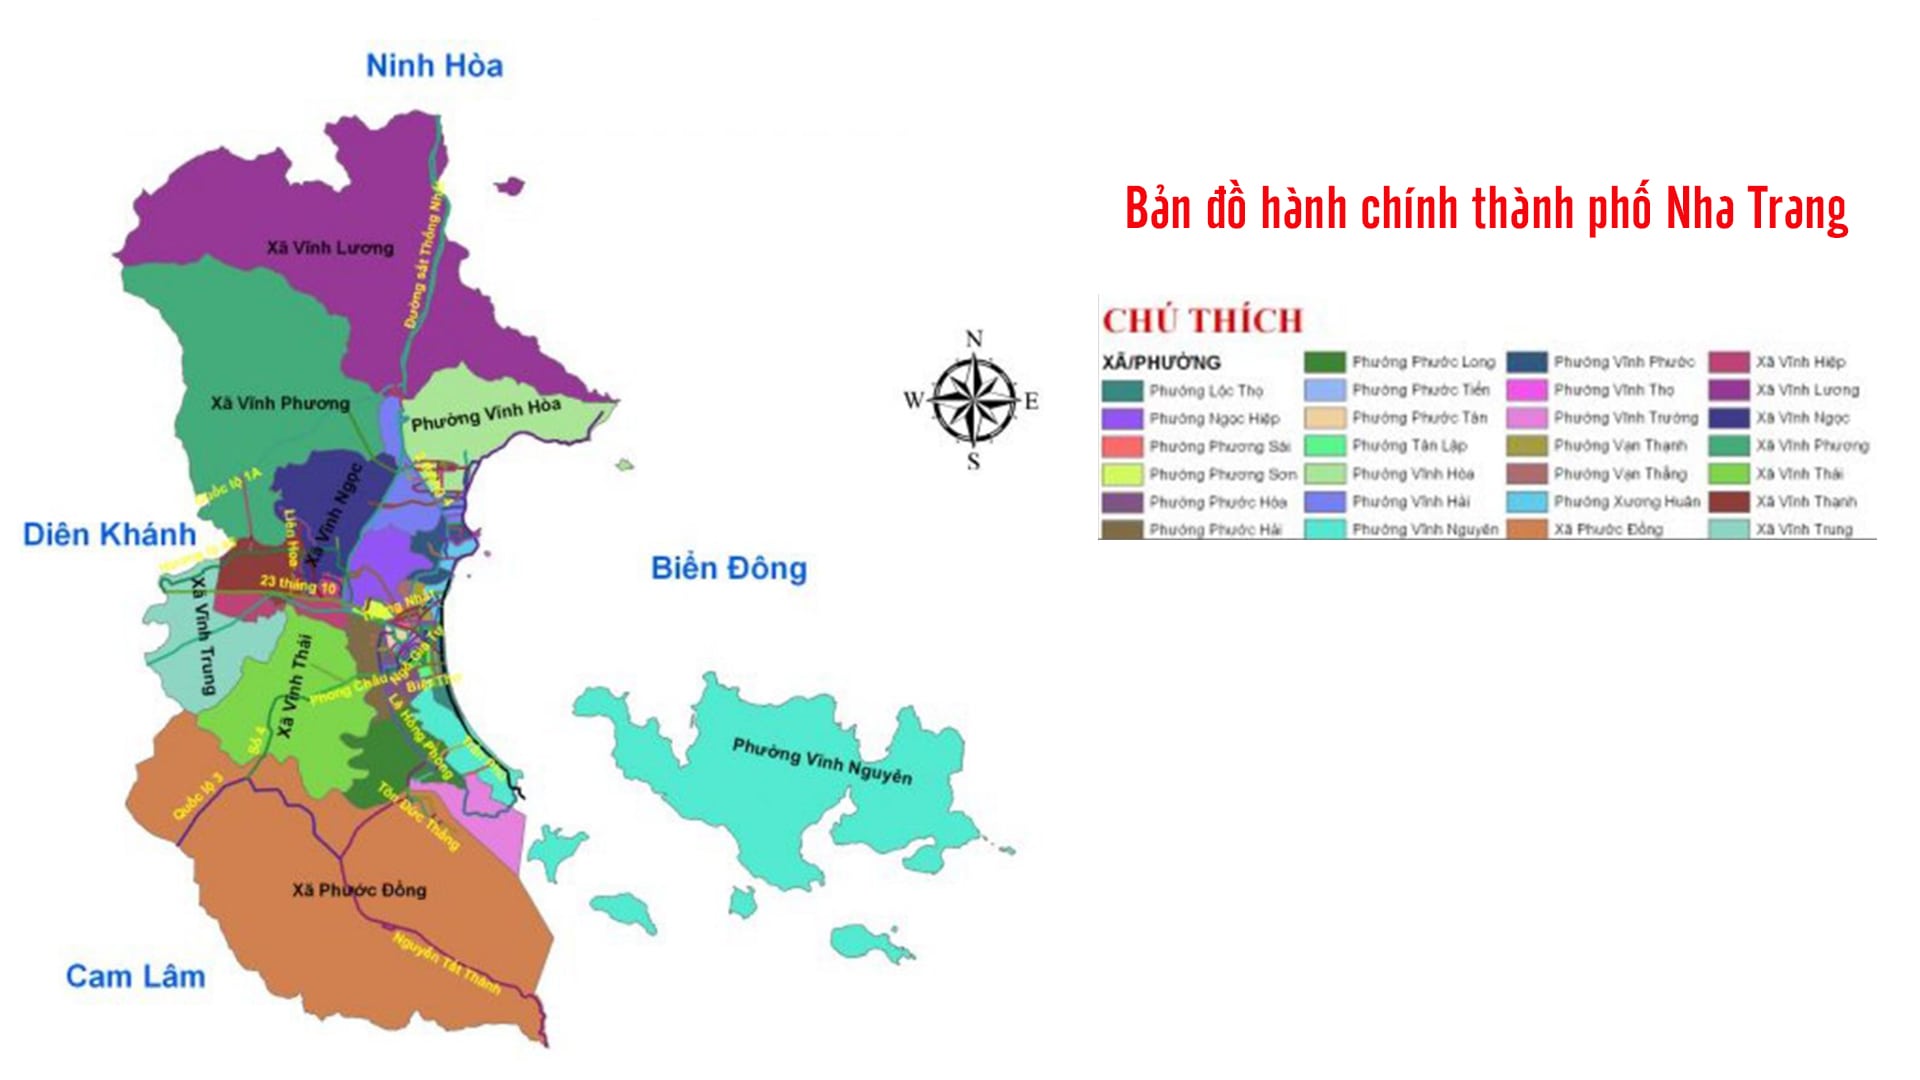 Bản đồng hành chính thành phố Nha Trang